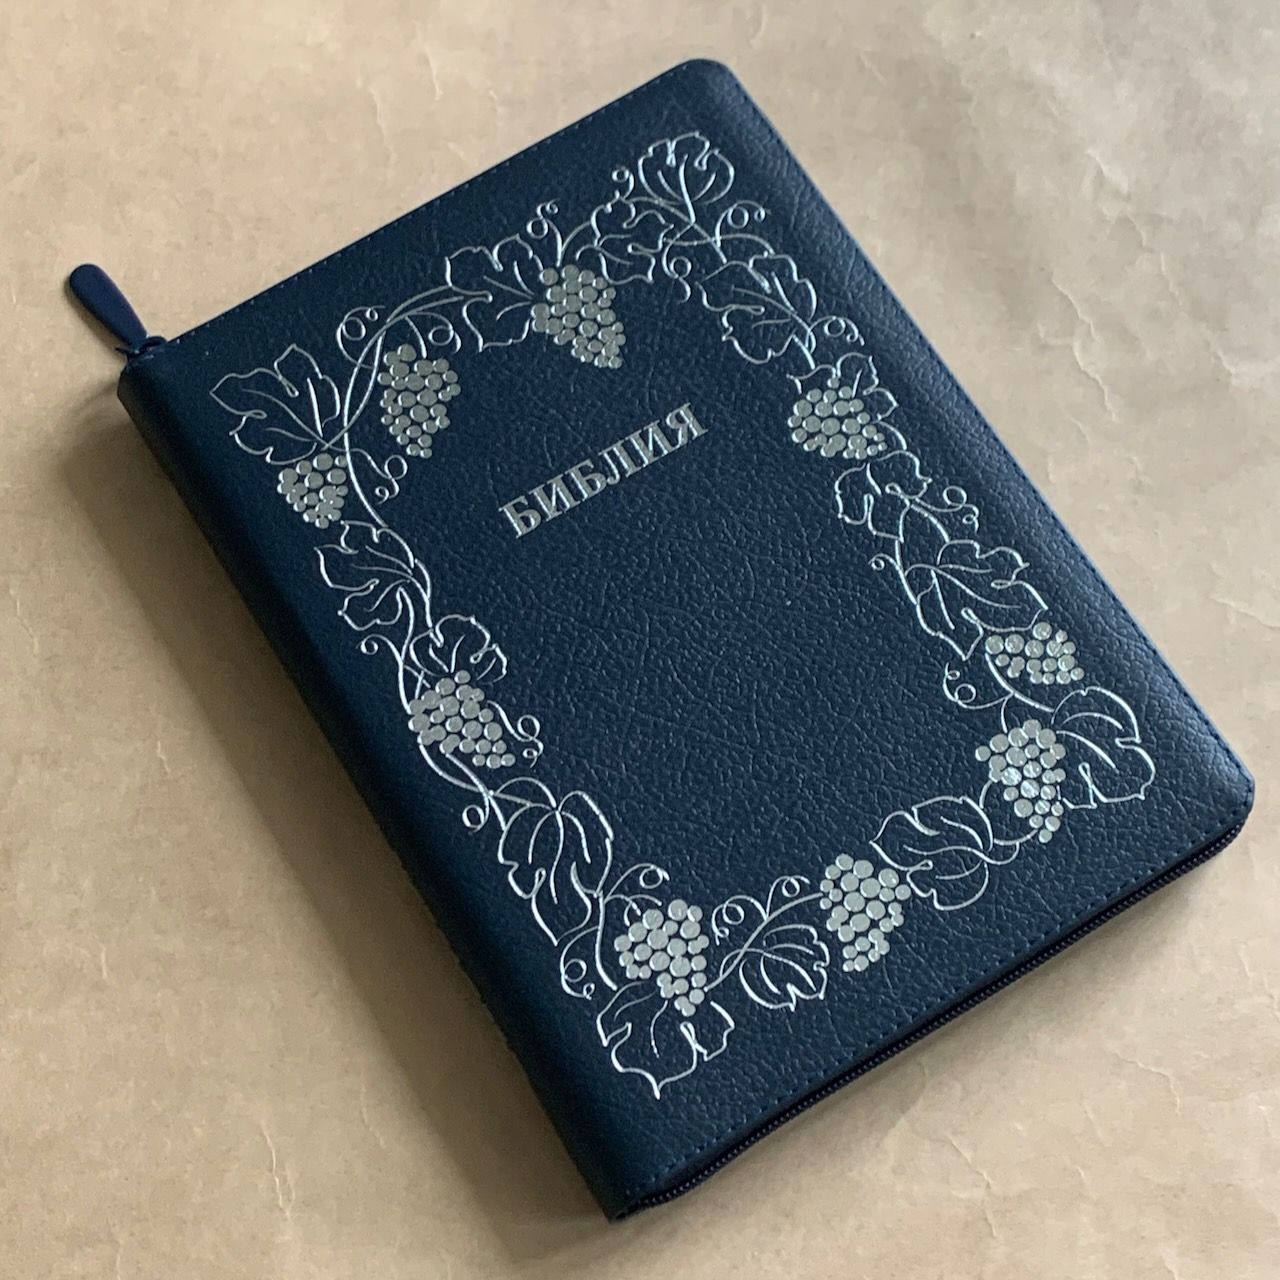 Библия 076z код B7, дизайн "серебряная рамка с виноградной лозой", кожаный переплет на молнии, цвет темно-синий пятнистый, размер 180x243 мм